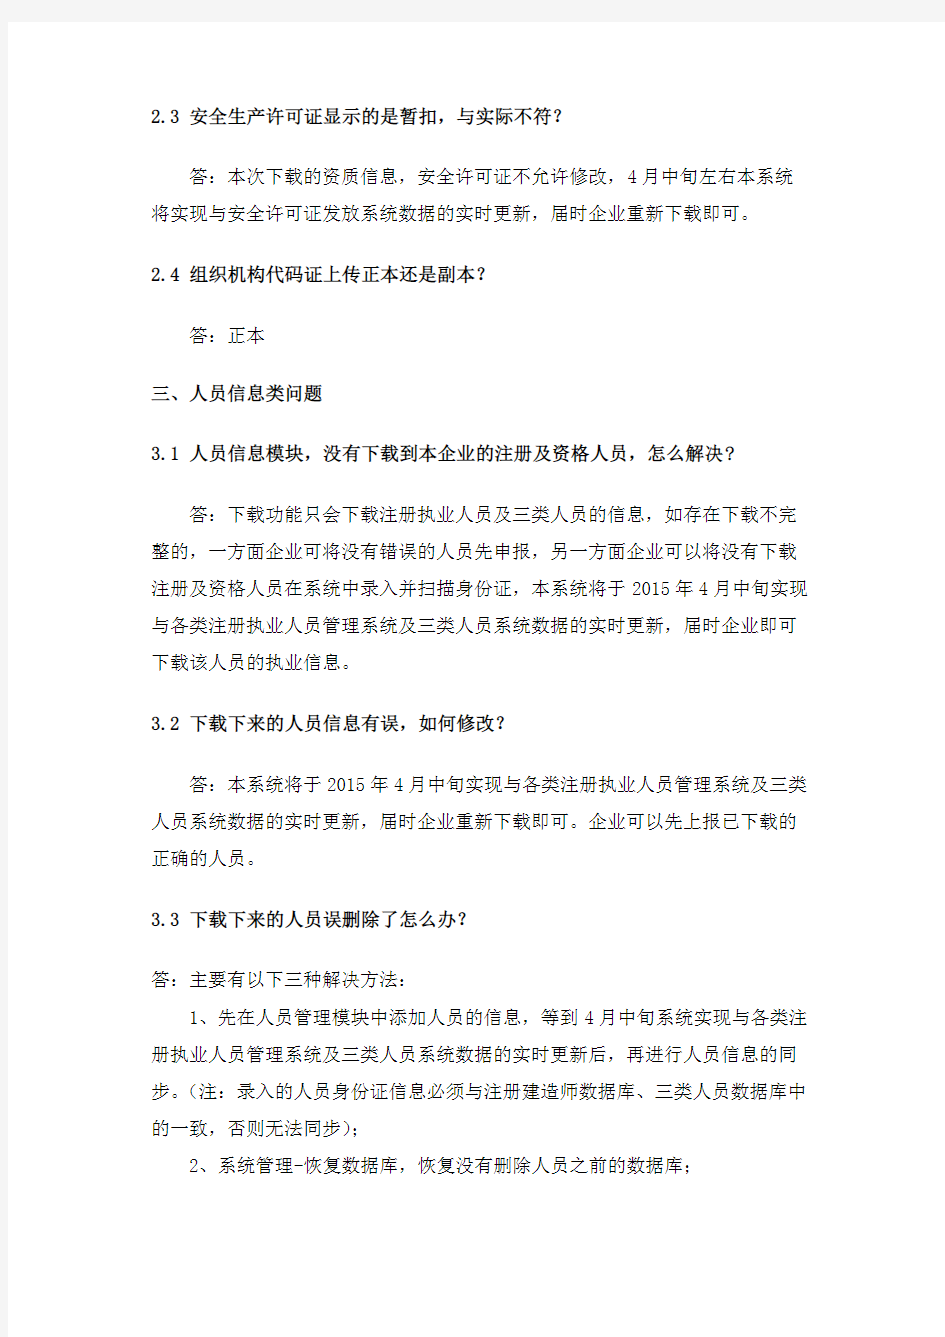 浙江省建筑市场监管与诚信信息系统常见问题(V3.0版 2015年3月31日)